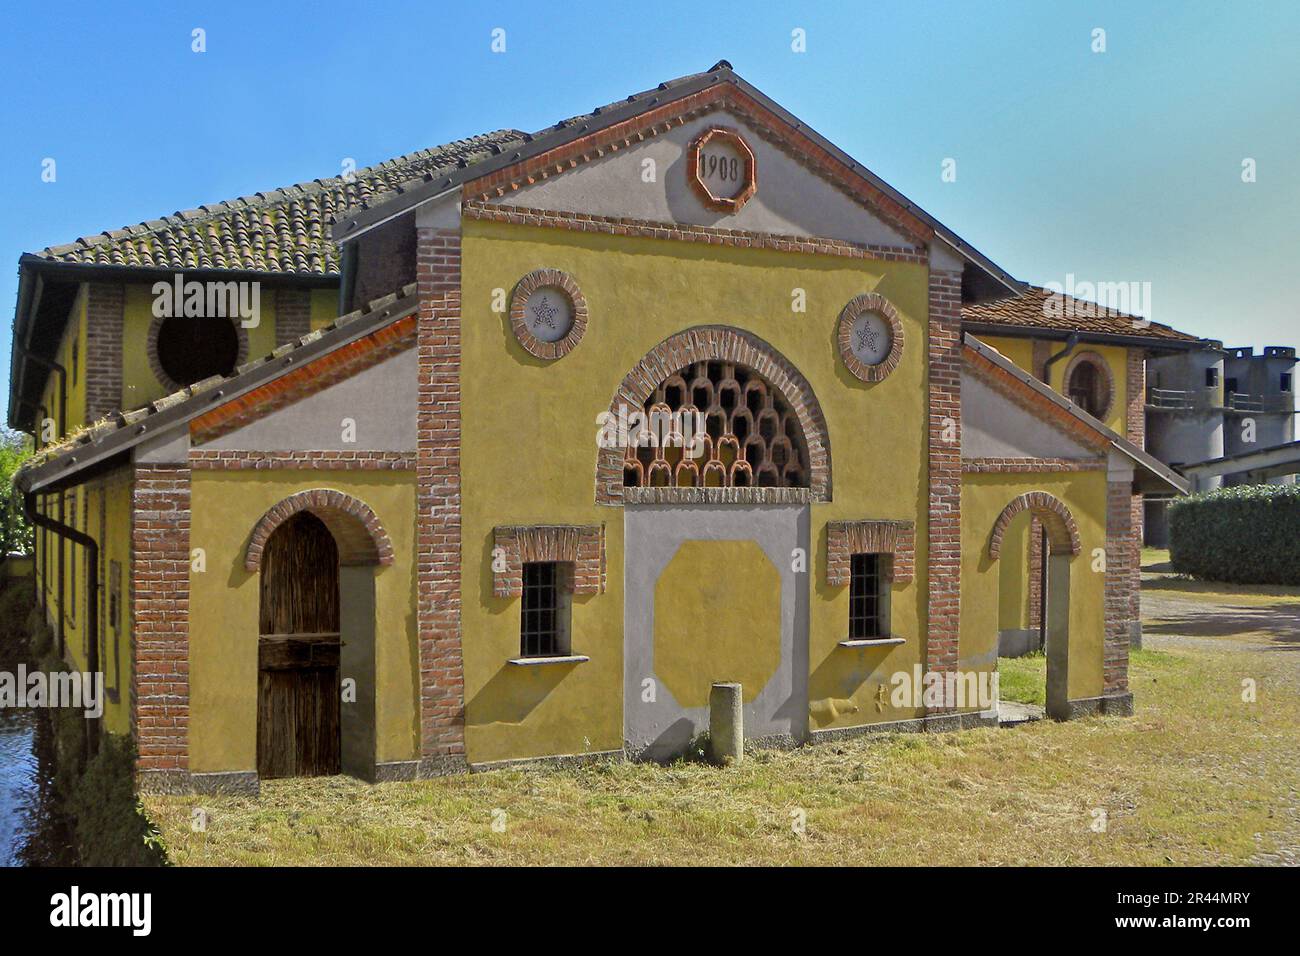 Fombio (Fùmbi in dialetto lodigiano) è un comune italiano di 2,236 abitanti della provincia di Lodi in Lombardia. (Wikipedia) Foto Stock